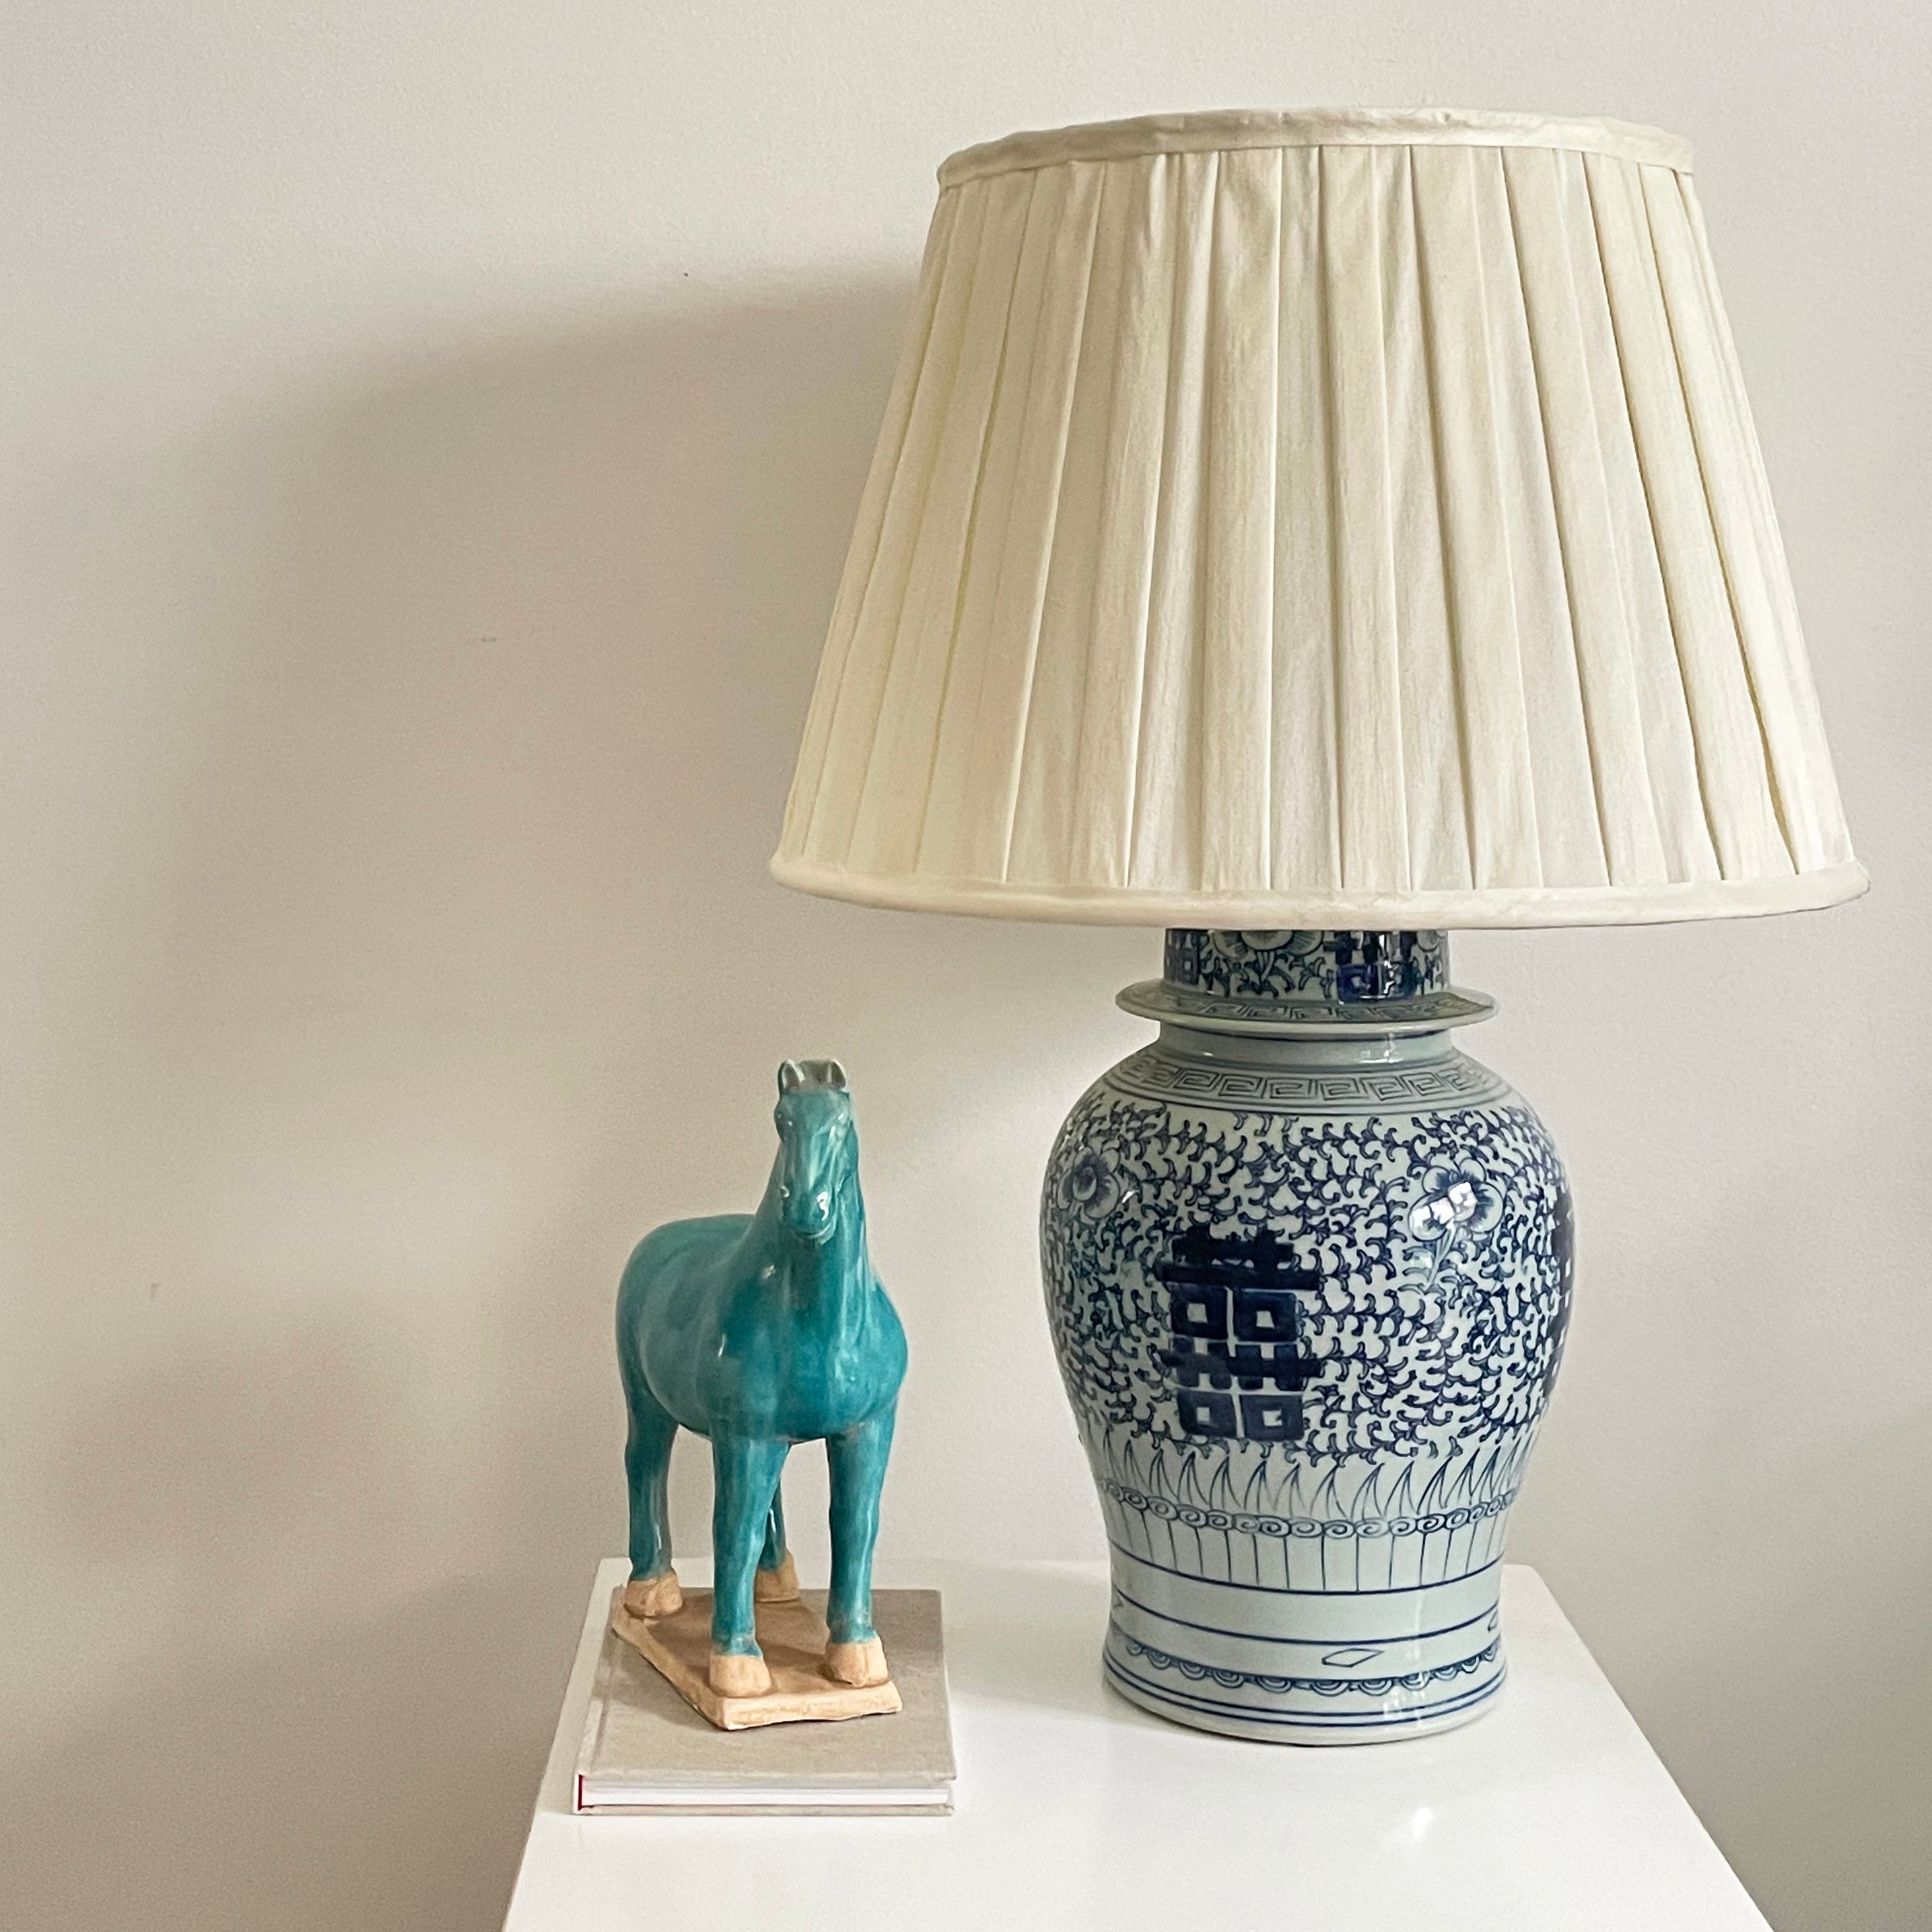 Light Blue Ceramic Horses, Pair - Return